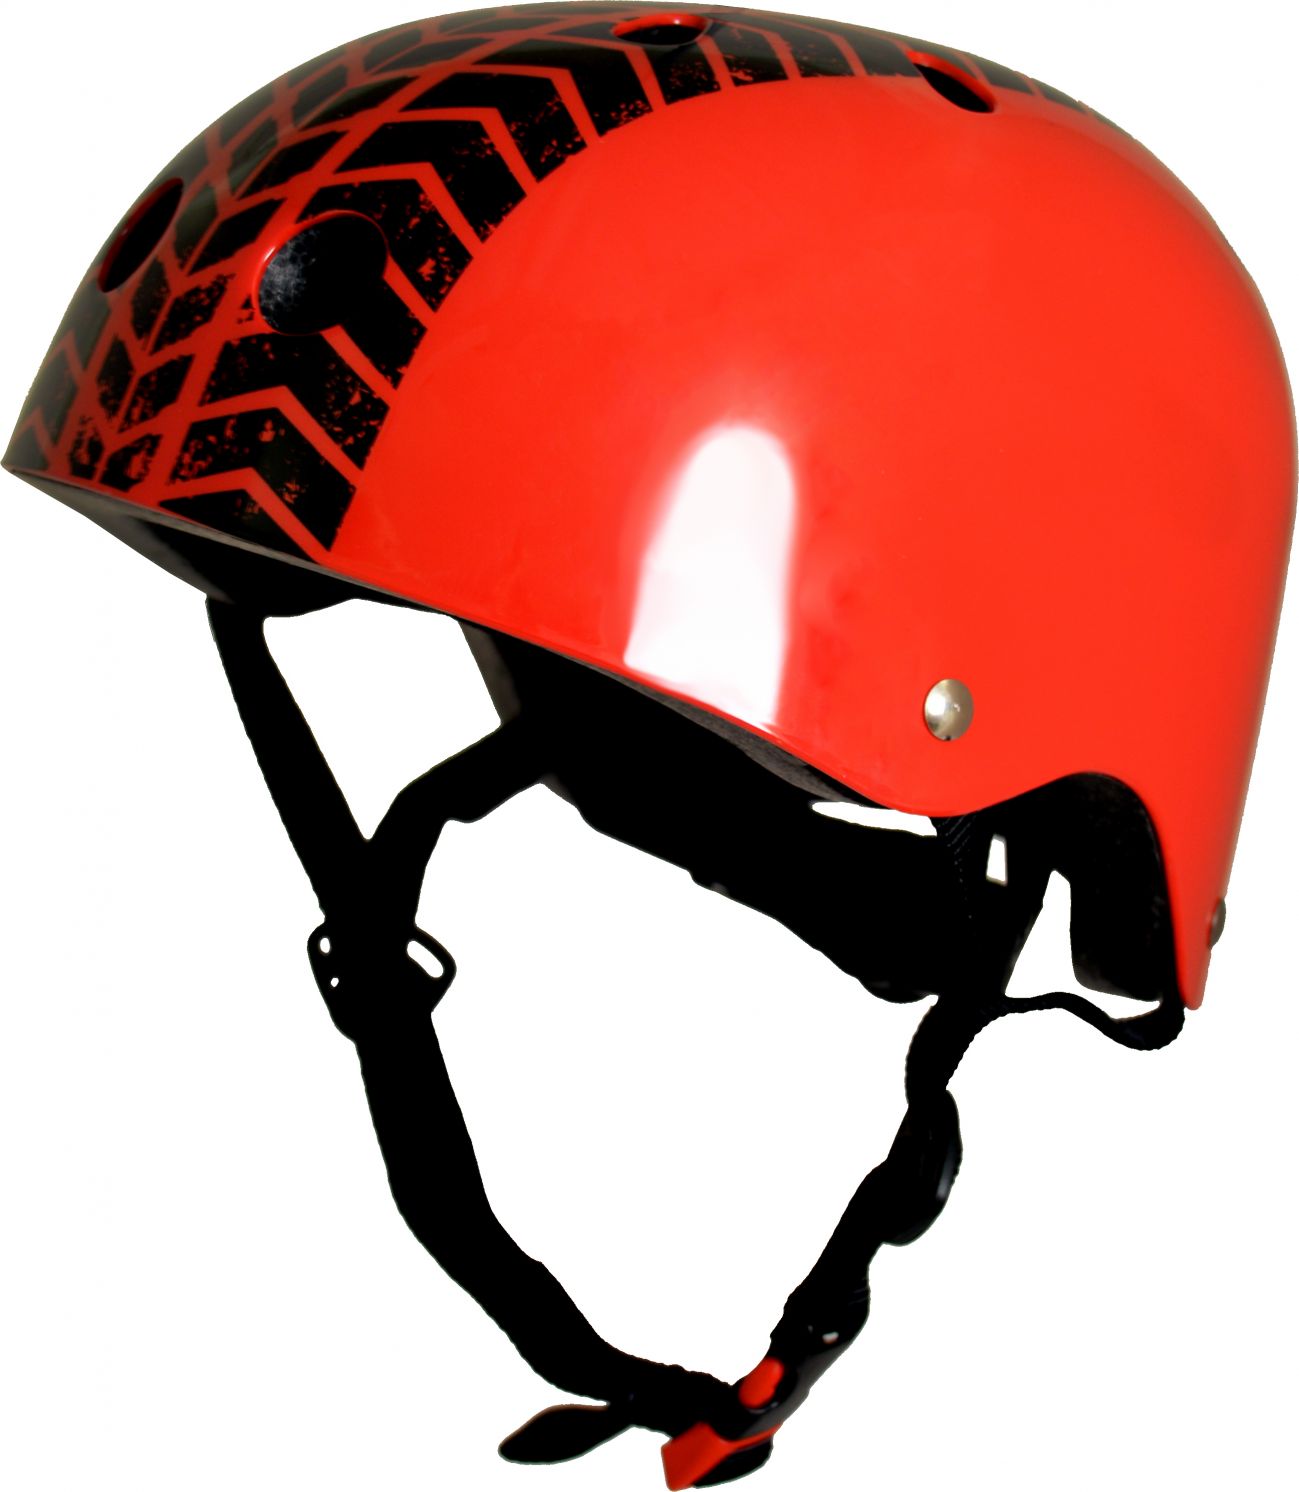 Шлем детский Kiddimoto с рисунком протектора, красный, размер M 53-58см фото 1